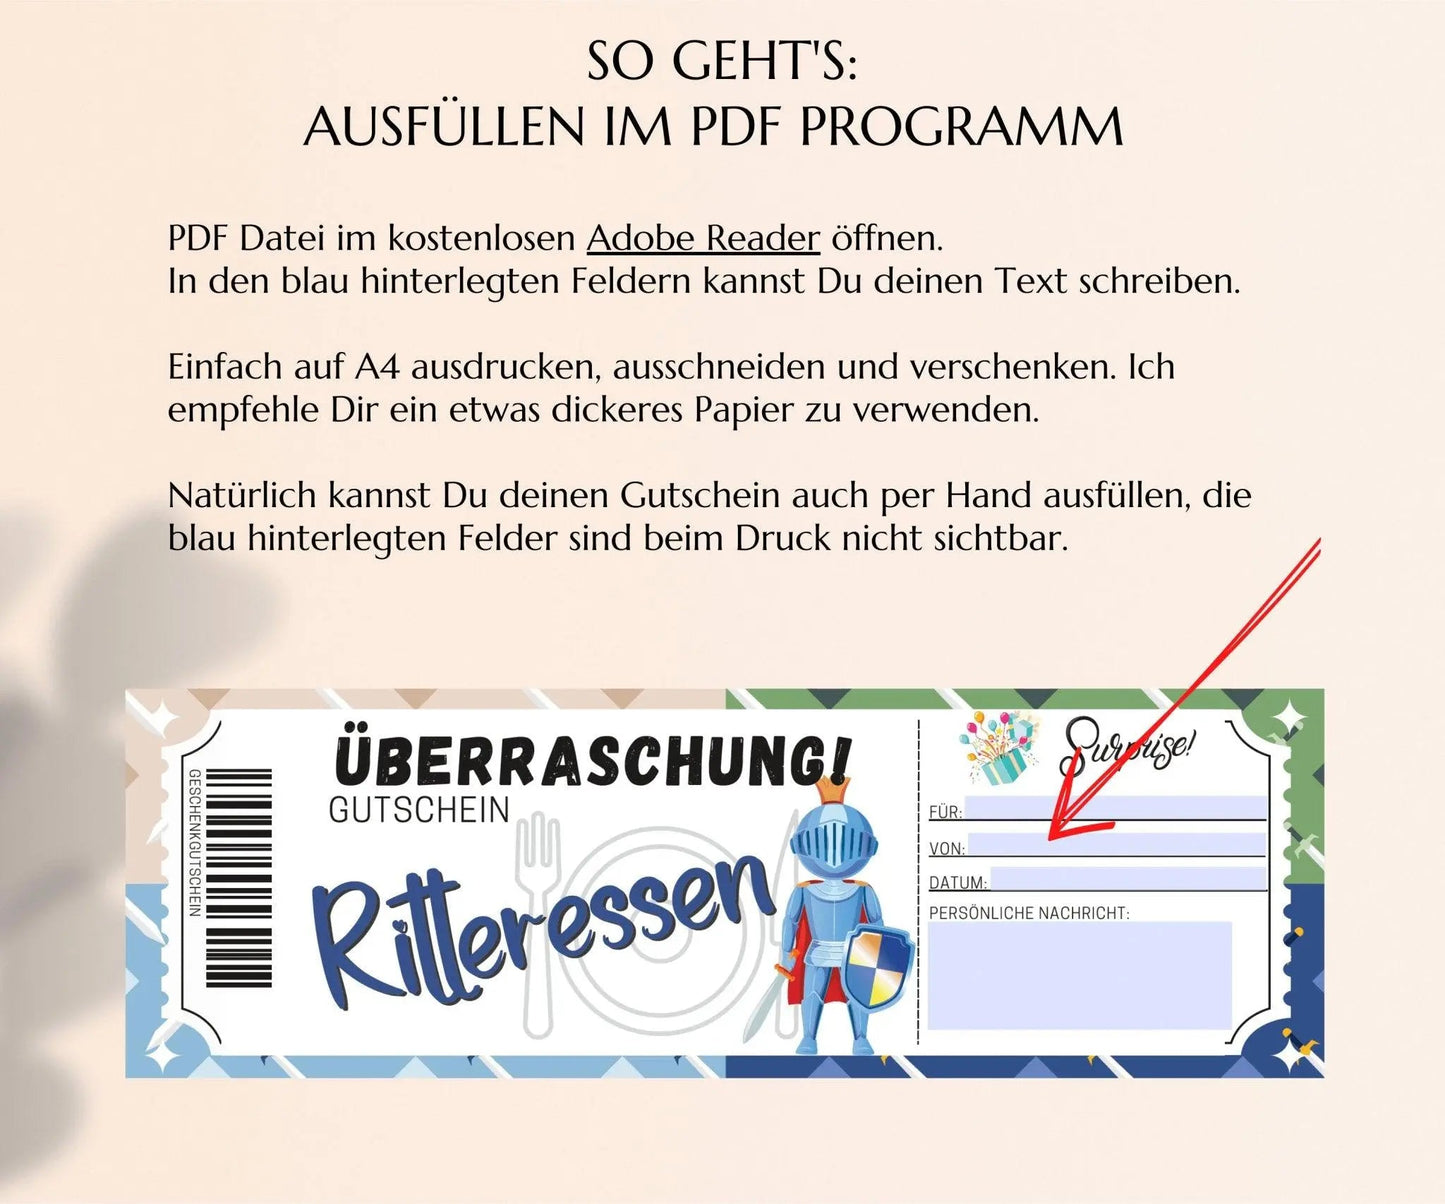 Ritteressen Gutschein Vorlage zum Ausdrucken | JSK179 - JSKDesignStudio.de